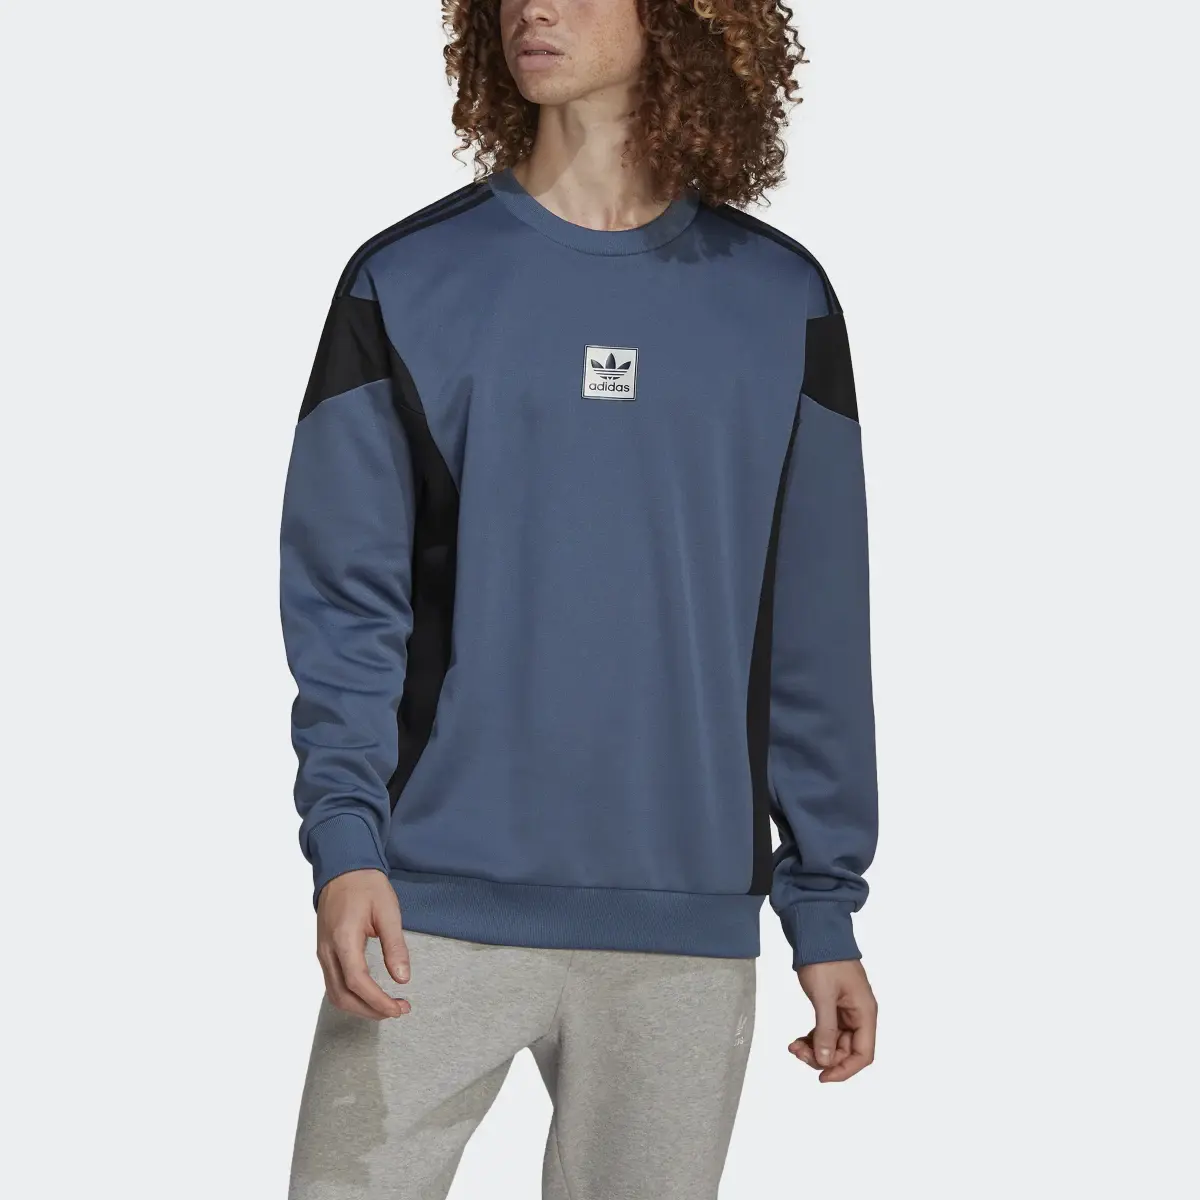 Adidas ID96 22 Crew Sweatshirt. 1